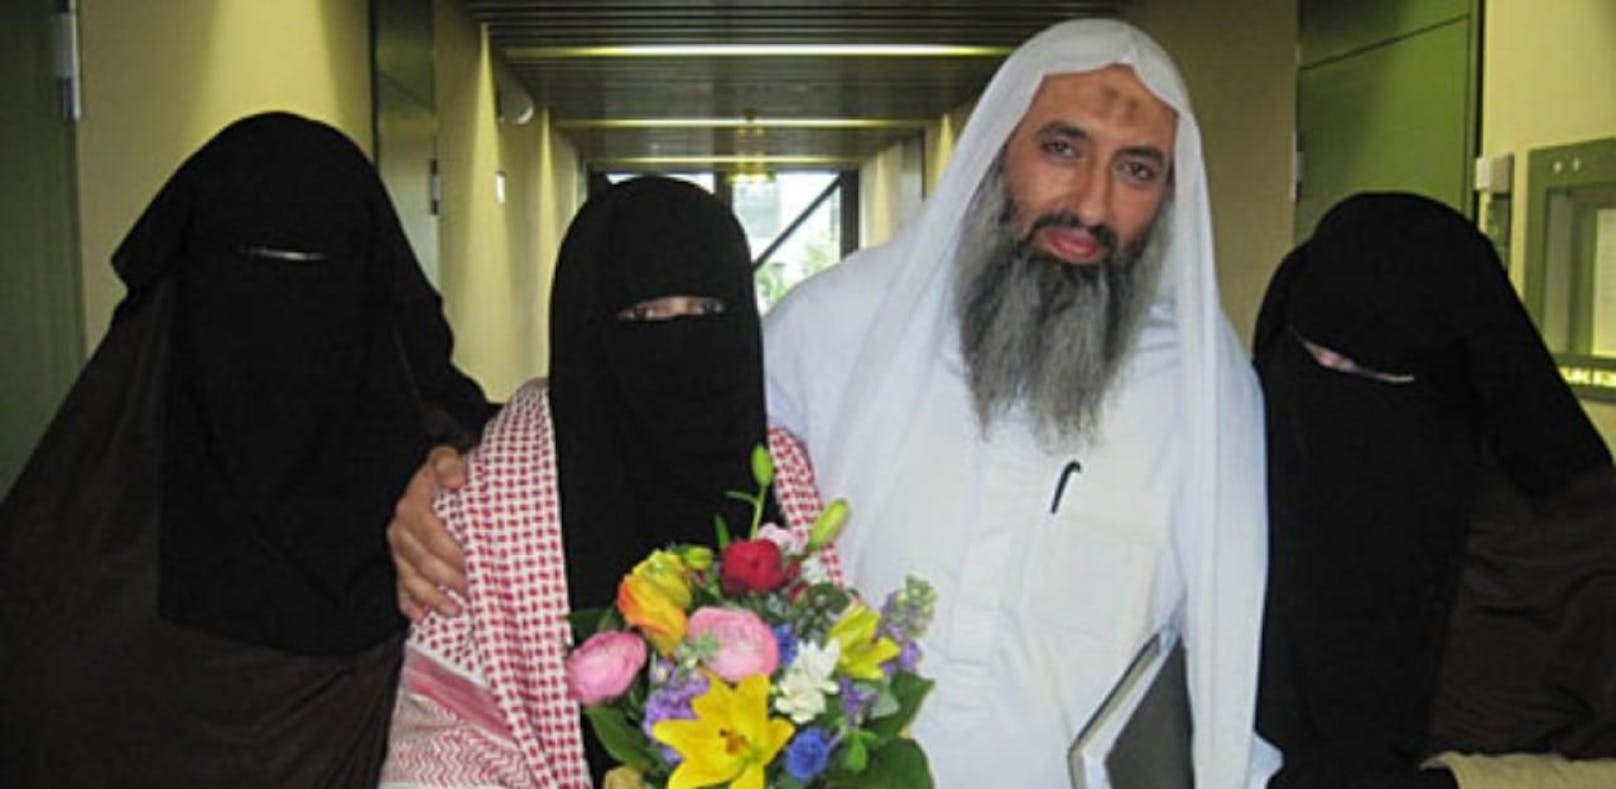 Terror-Verdacht: Münchner Imam in Spanien verhaftet